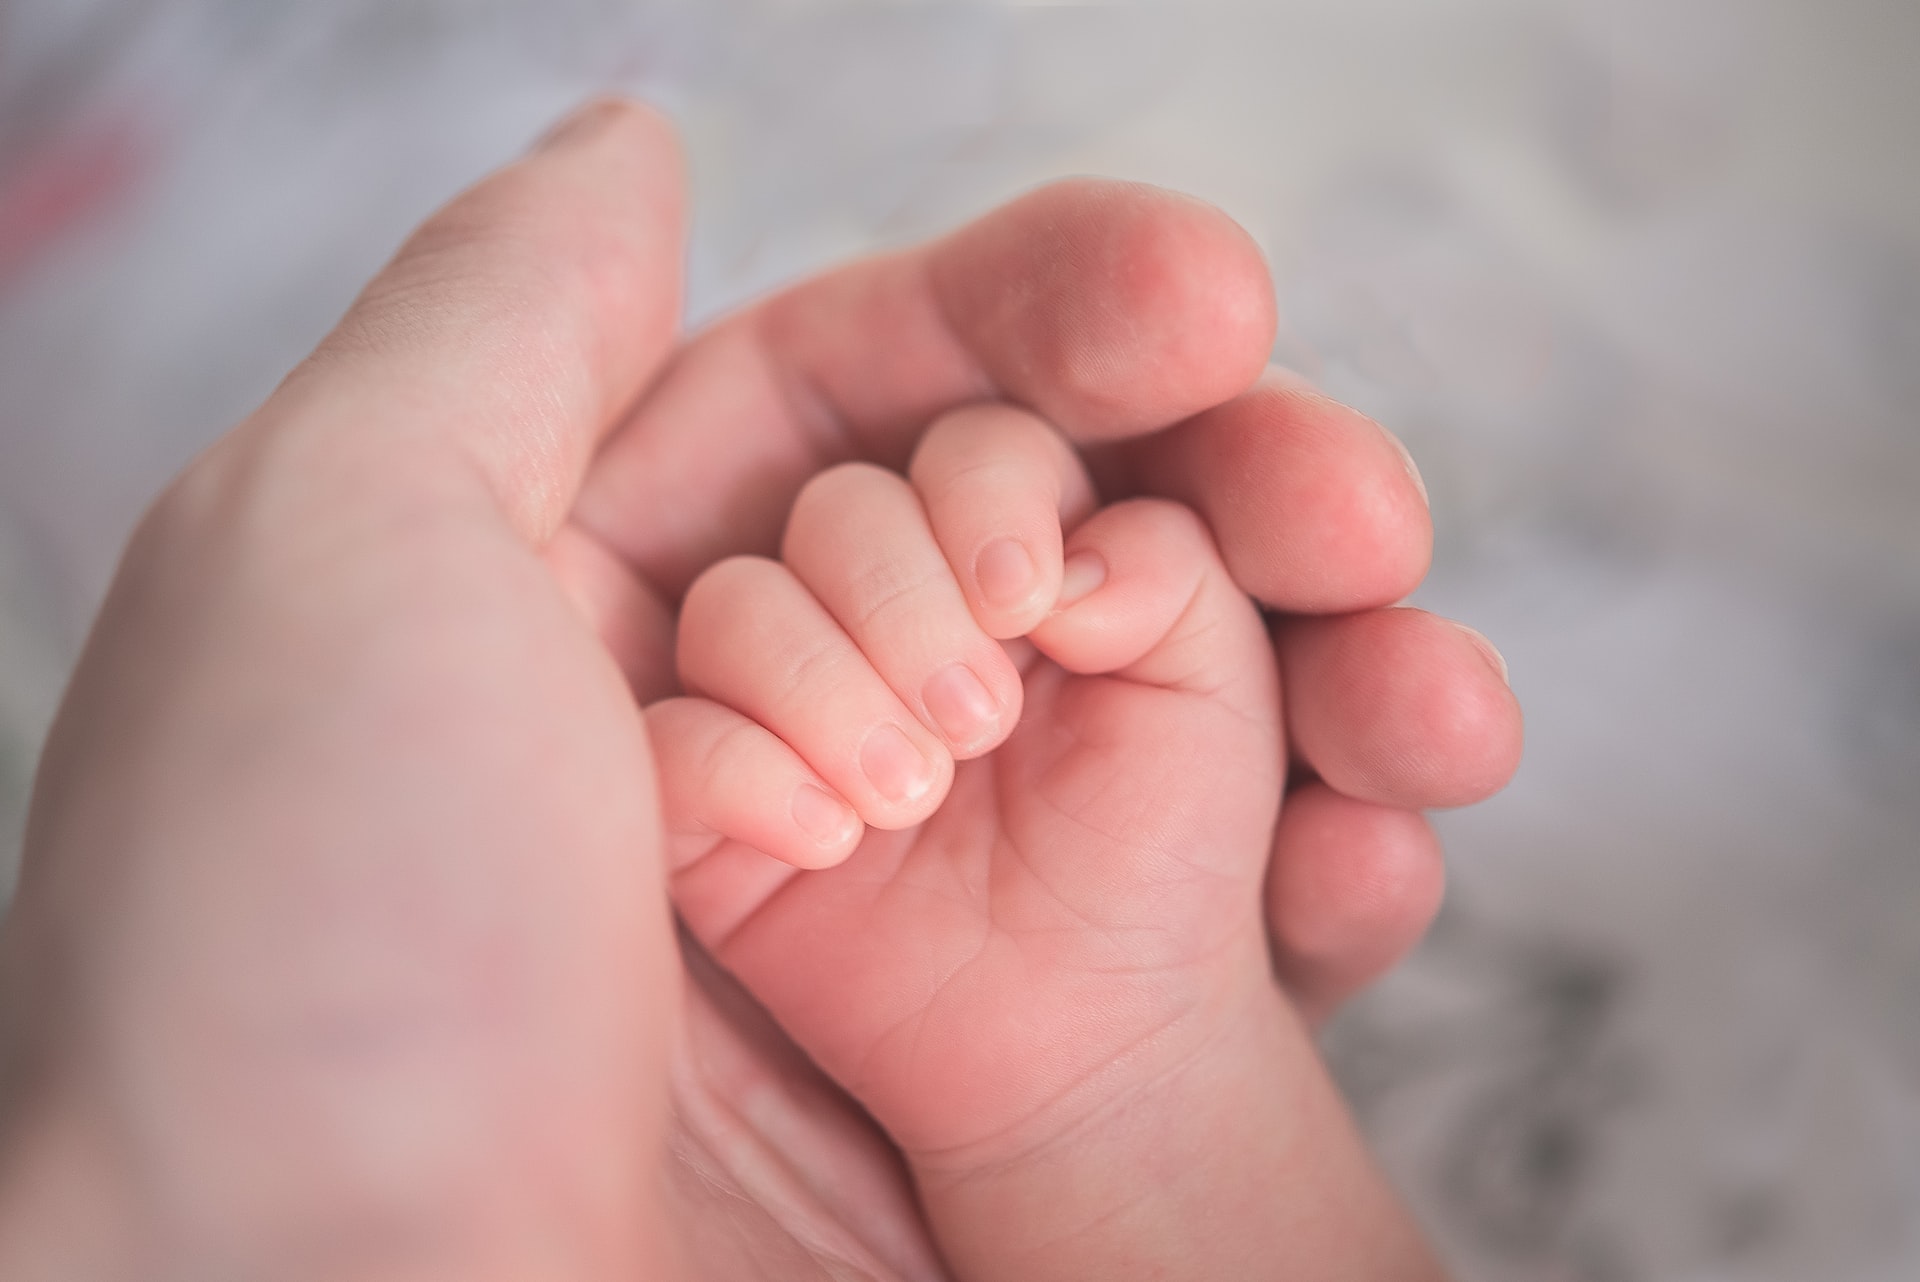 Mão de adulto envolvendo a mão de um bebê, simbolizando a importância de solicitar Auxílio Filho